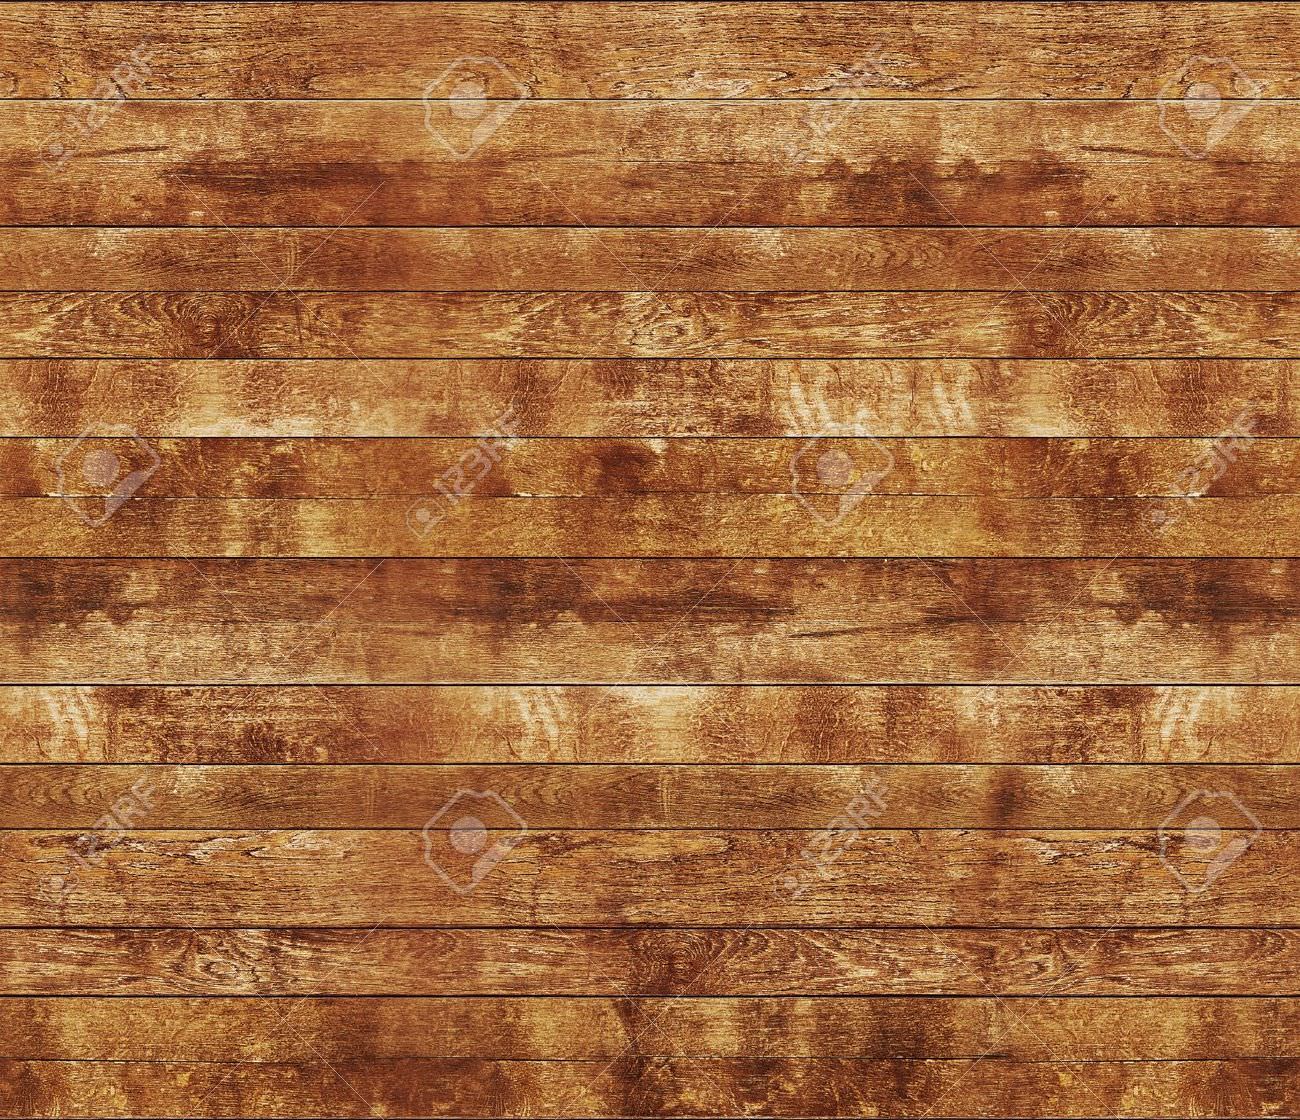 30+ Seamless Wood Textures | Textures | Design Trends - Premium PSD